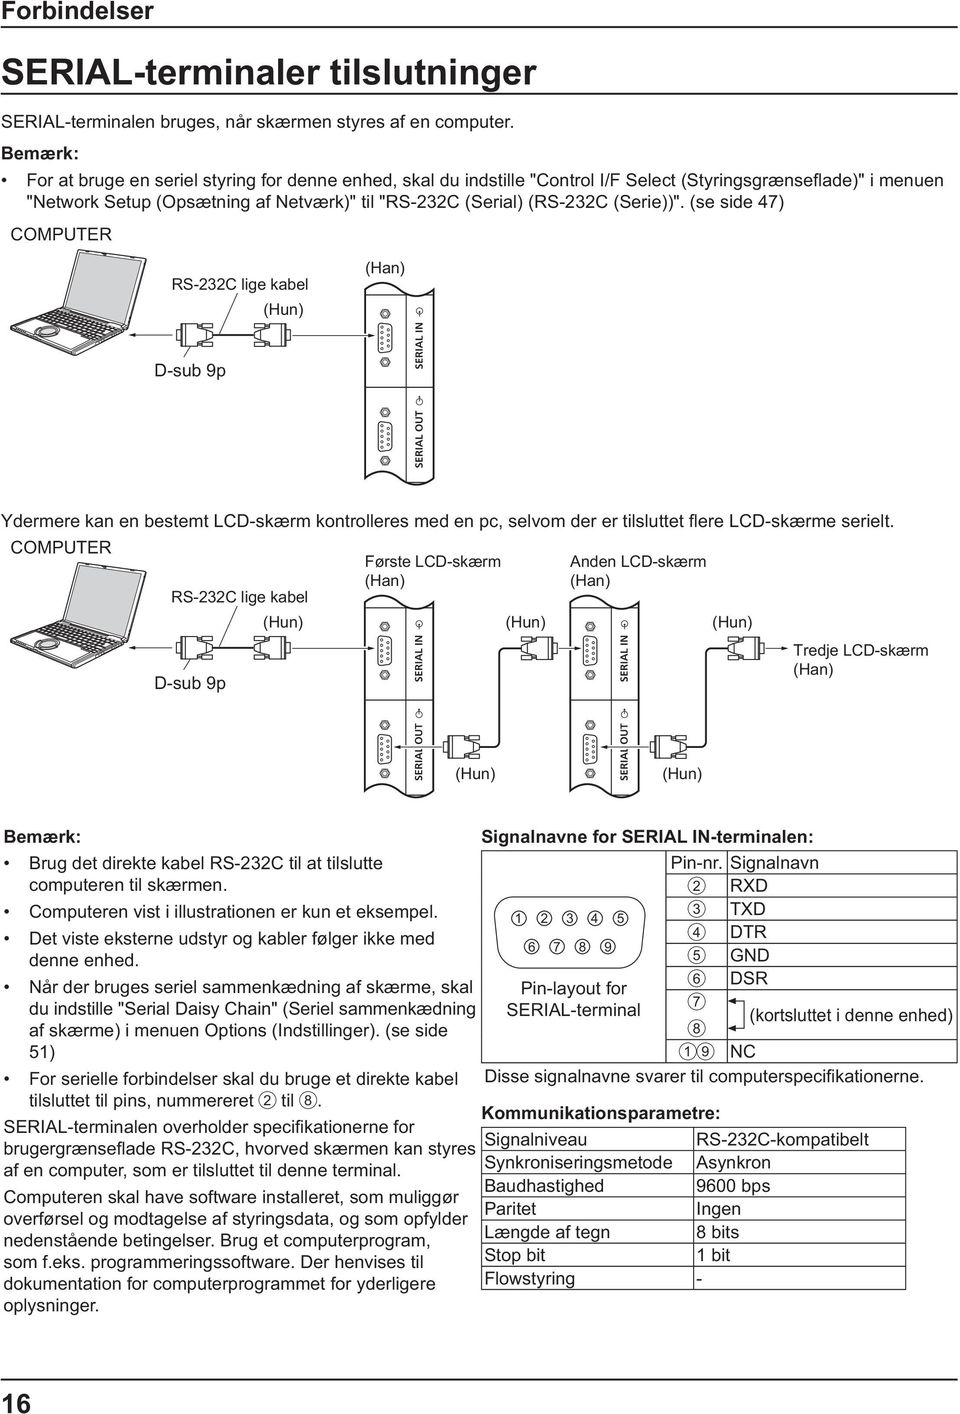 Brug det direkte kabel RS-232C til at tilslutte computeren til skærmen. Computeren vist i illustrationen er kun et eksempel. Det viste eksterne udstyr og kabler følger ikke med denne enhed.